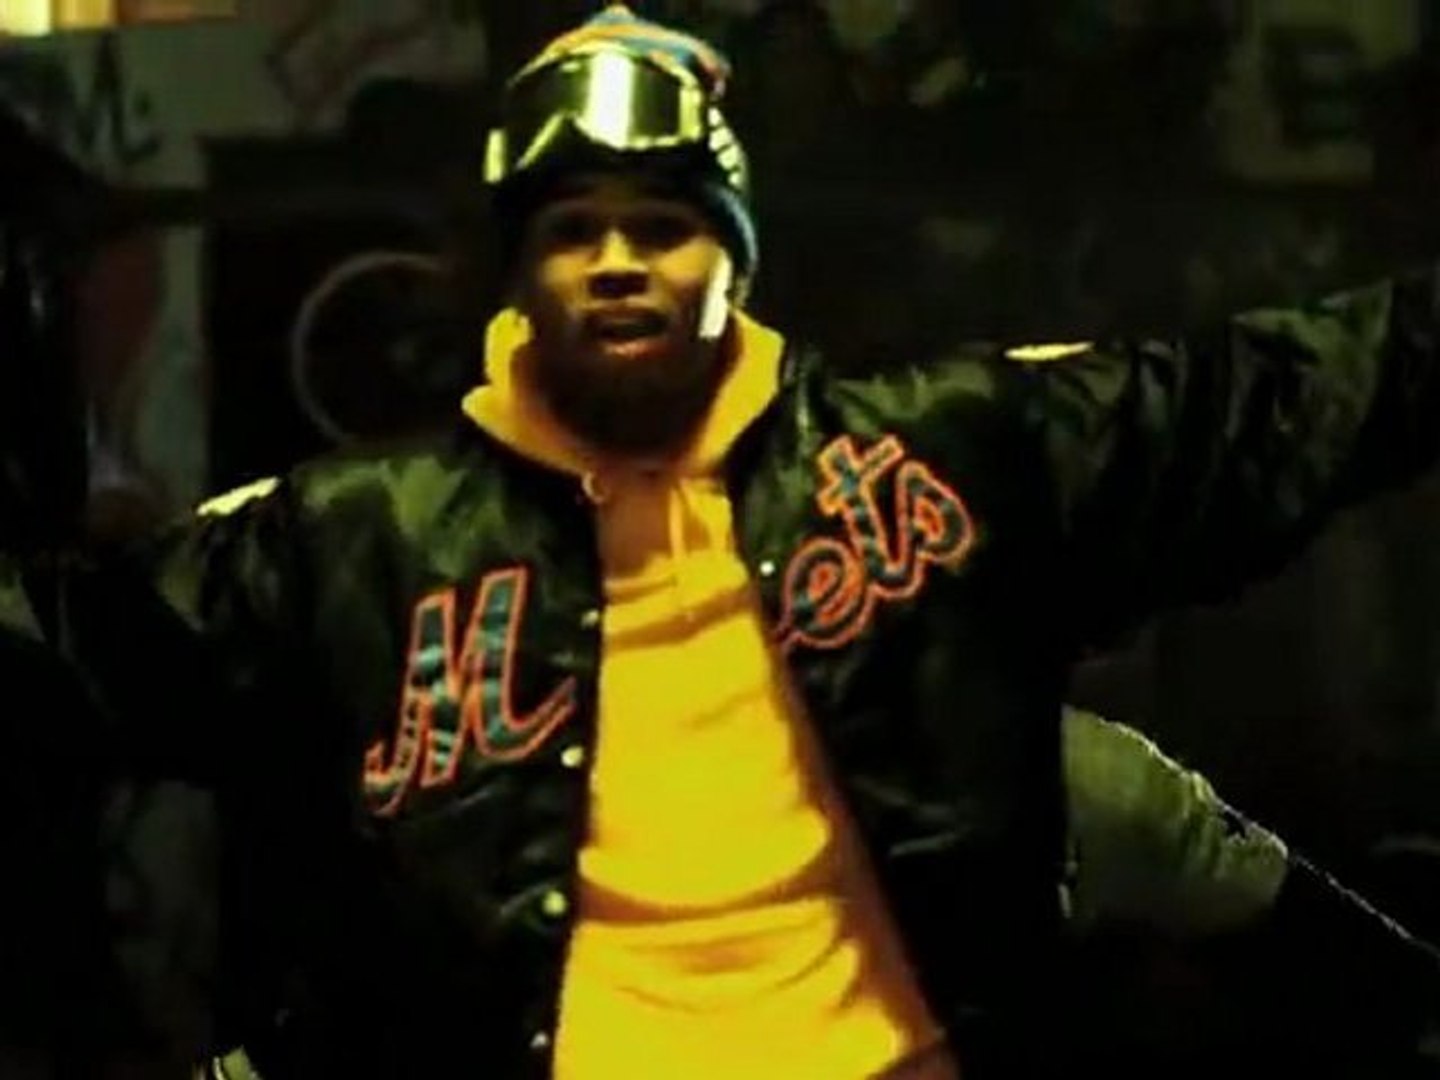 Chris Brown - Look At Me Now ft. Lil Wayne, Busta Rhymes - video